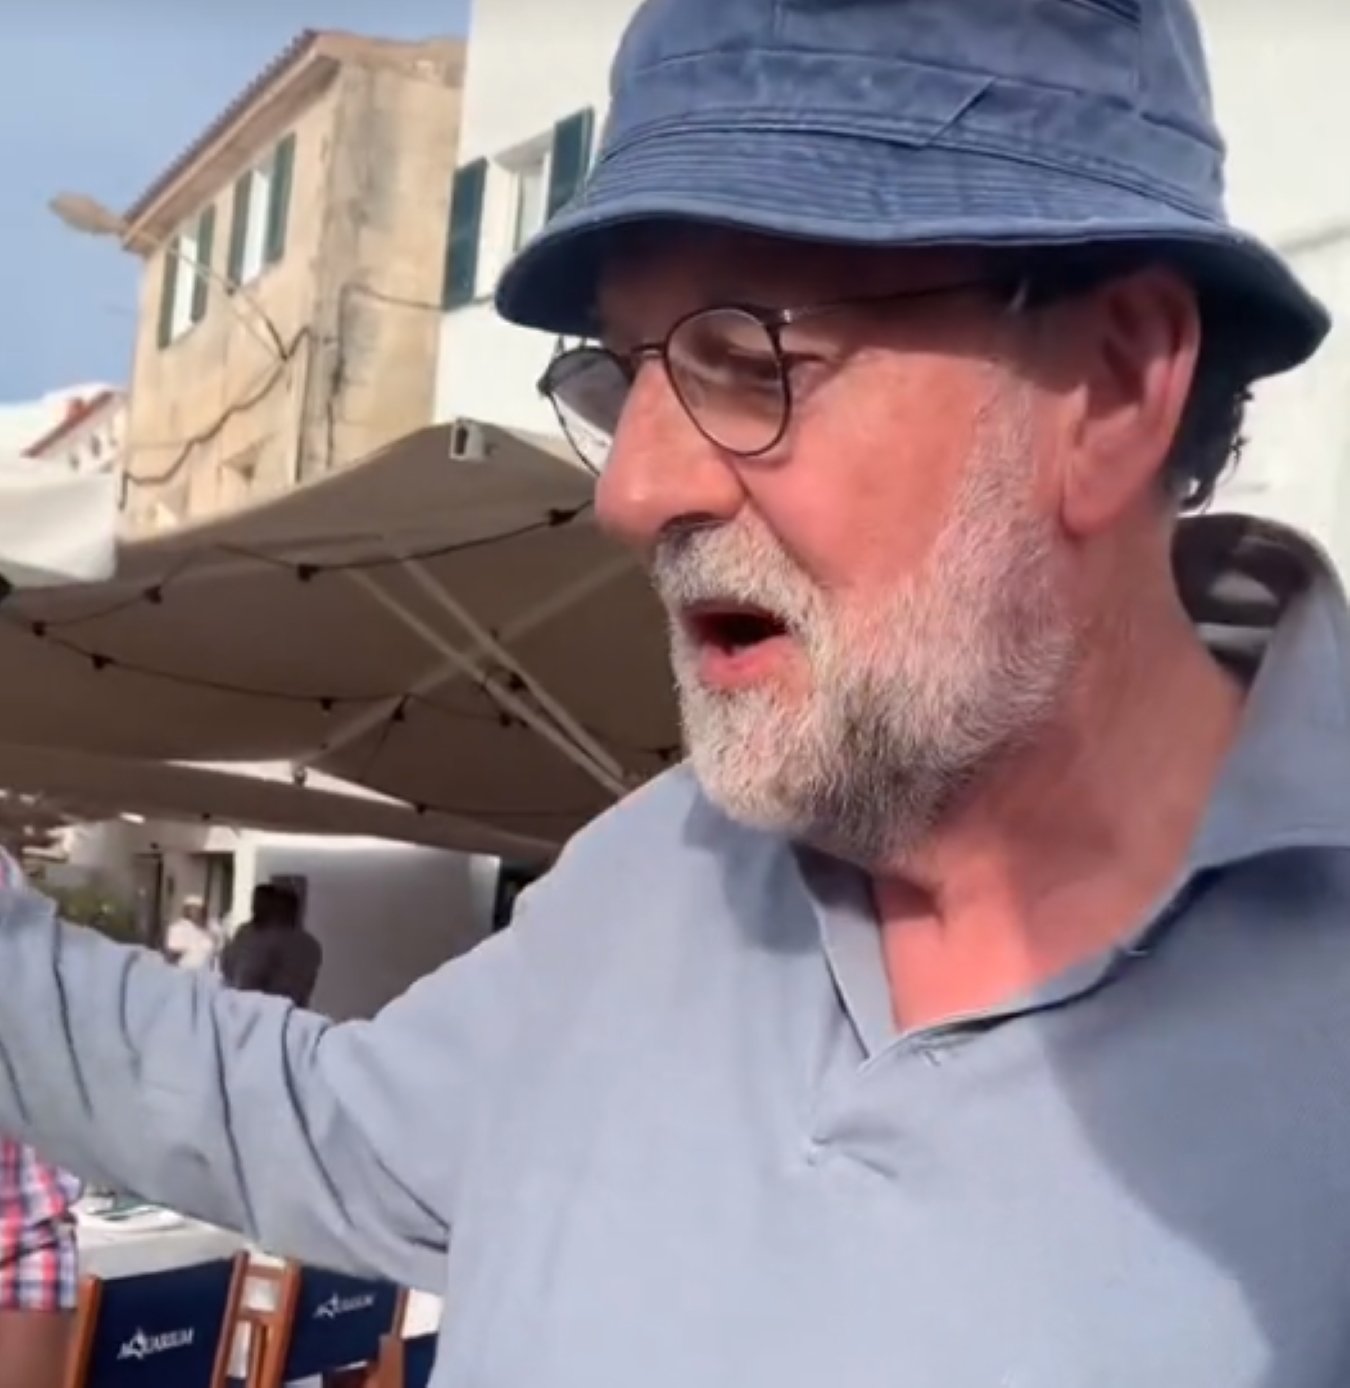 Mariano Rajoy, vacaciones de jubilado en Menorca. Encuentro con jóvenes y pasa esto